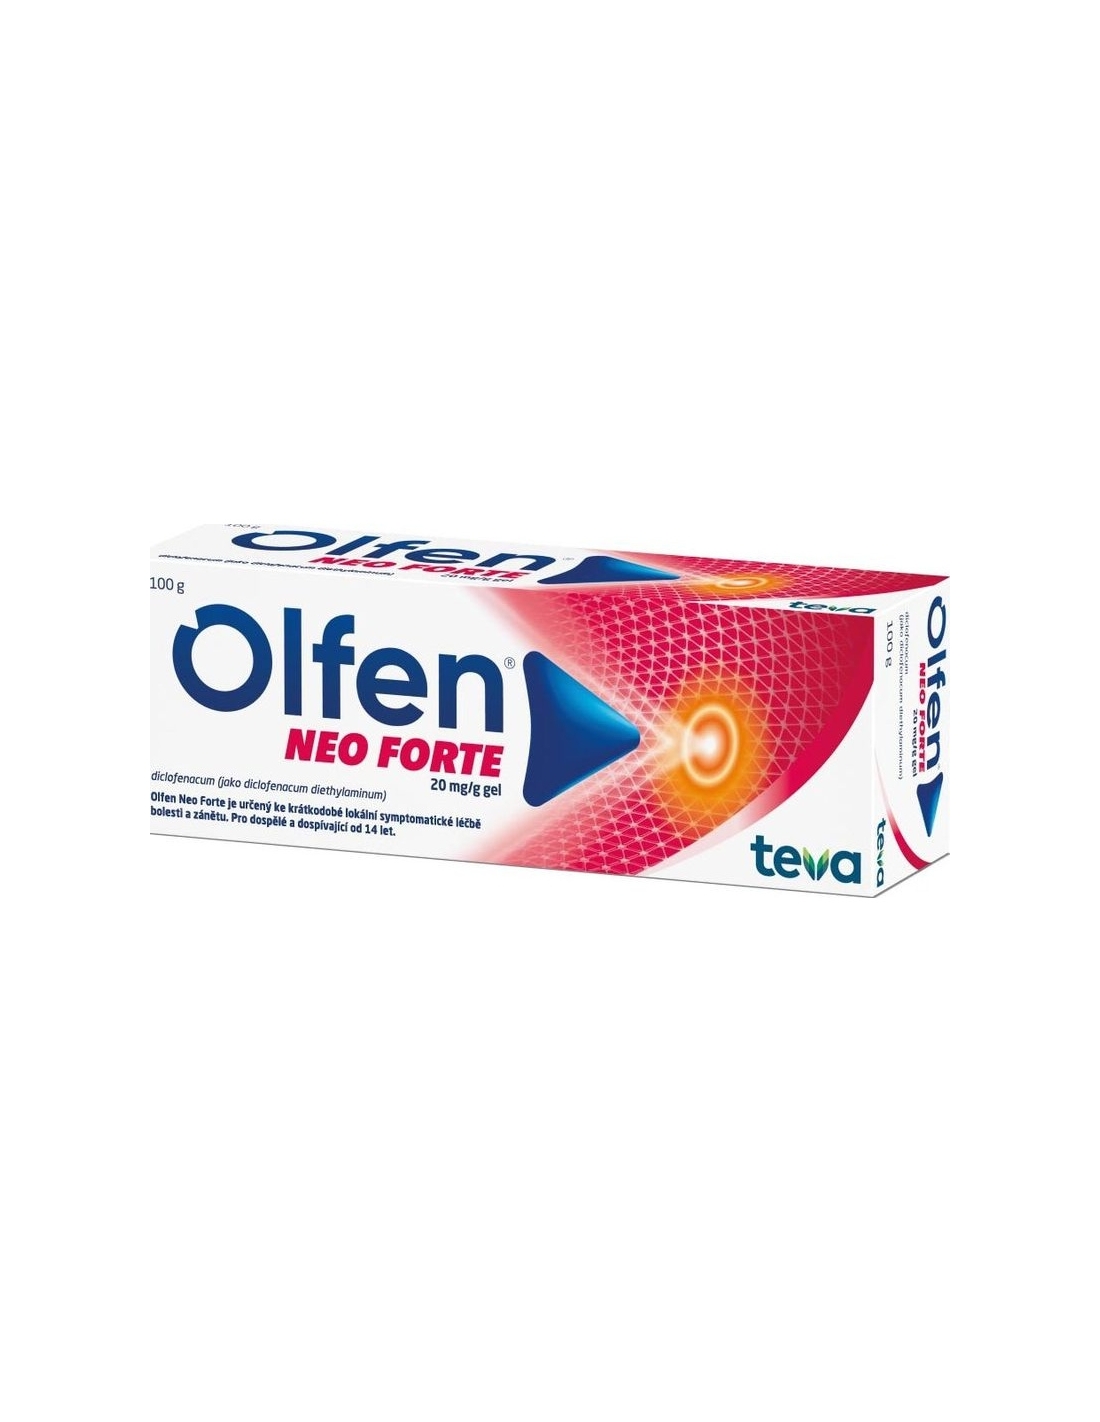 olfen forte 23.2 mg/g gel cutáneo 100 g: Qué es Olfen Forte y para qué ...